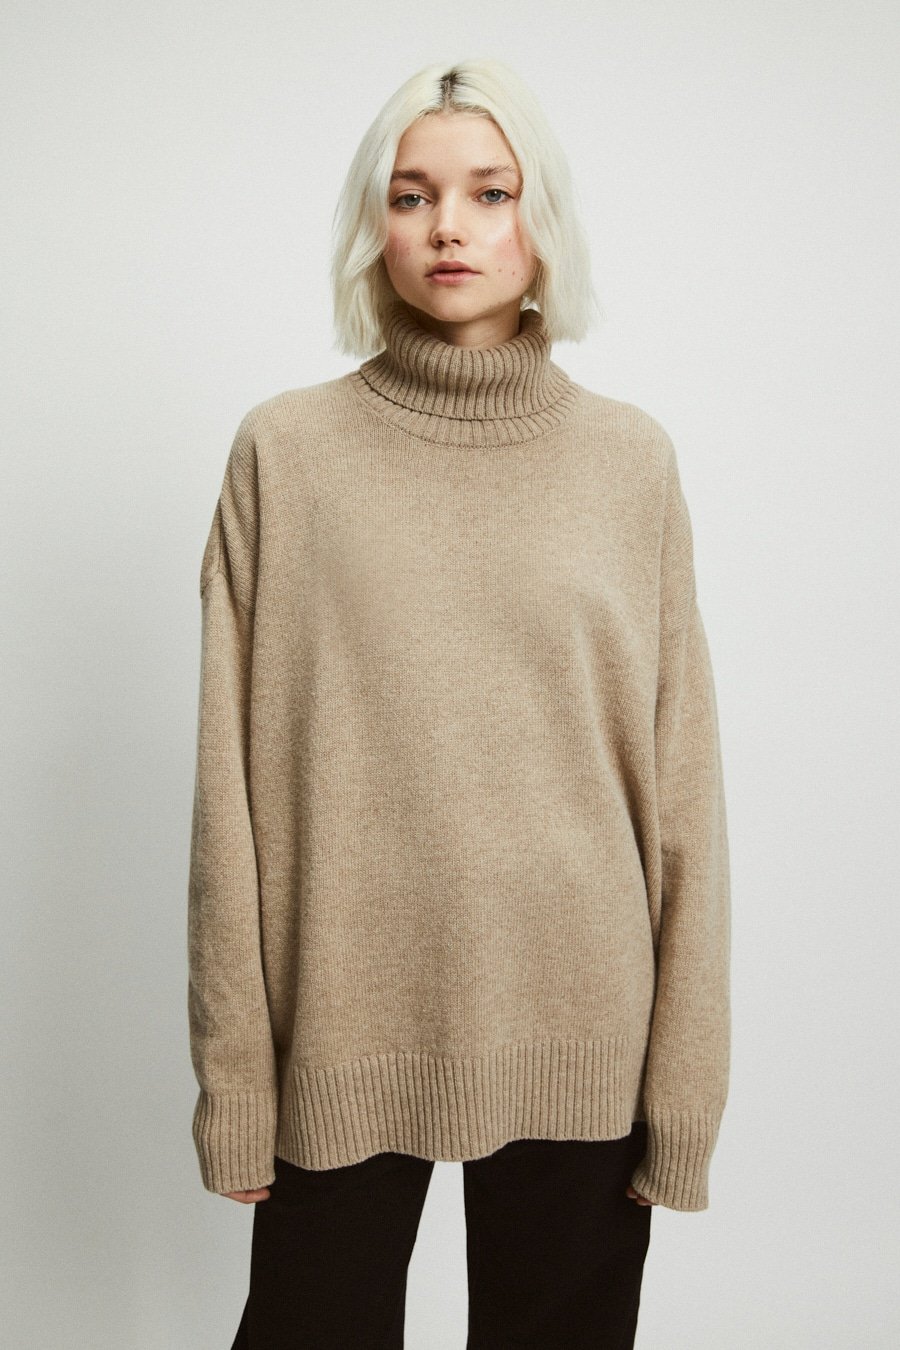 Rita Row Teton Sweater